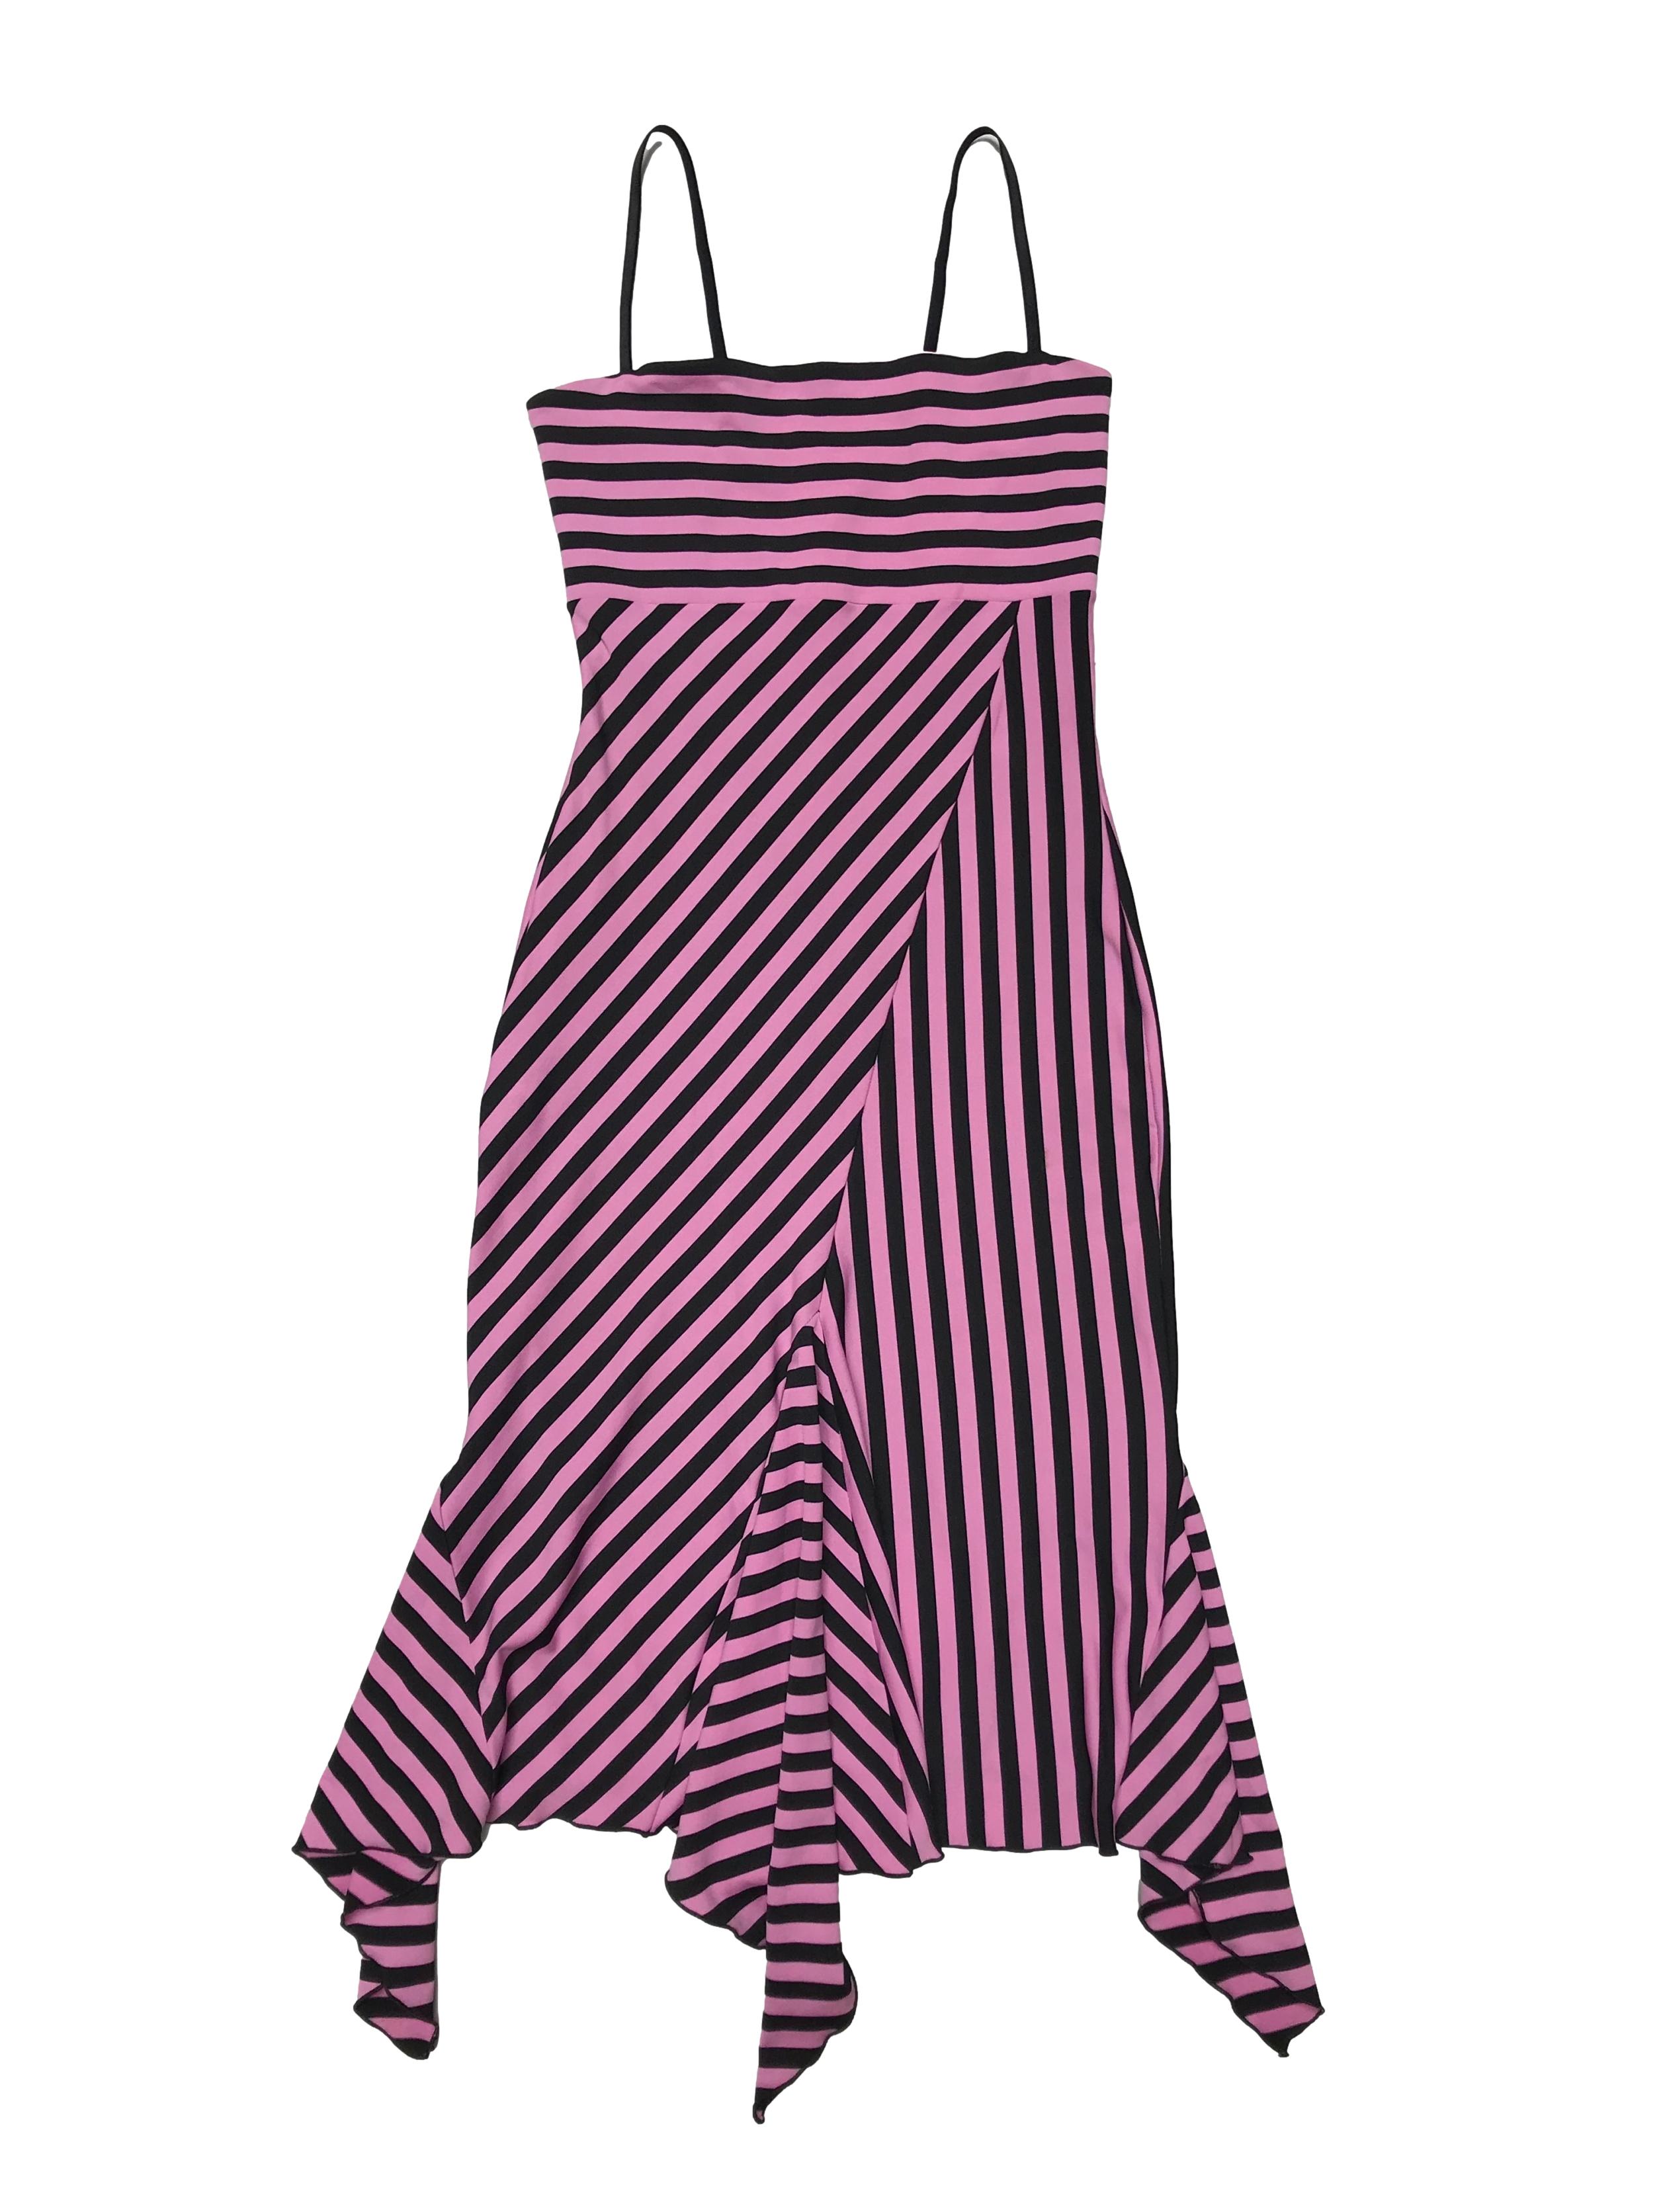 Vestido Blue7 de tela stretch en franjas rosadas y negras, tiene forro posterior y volantes asimétricos en basta. Largo desde sisa 90cm